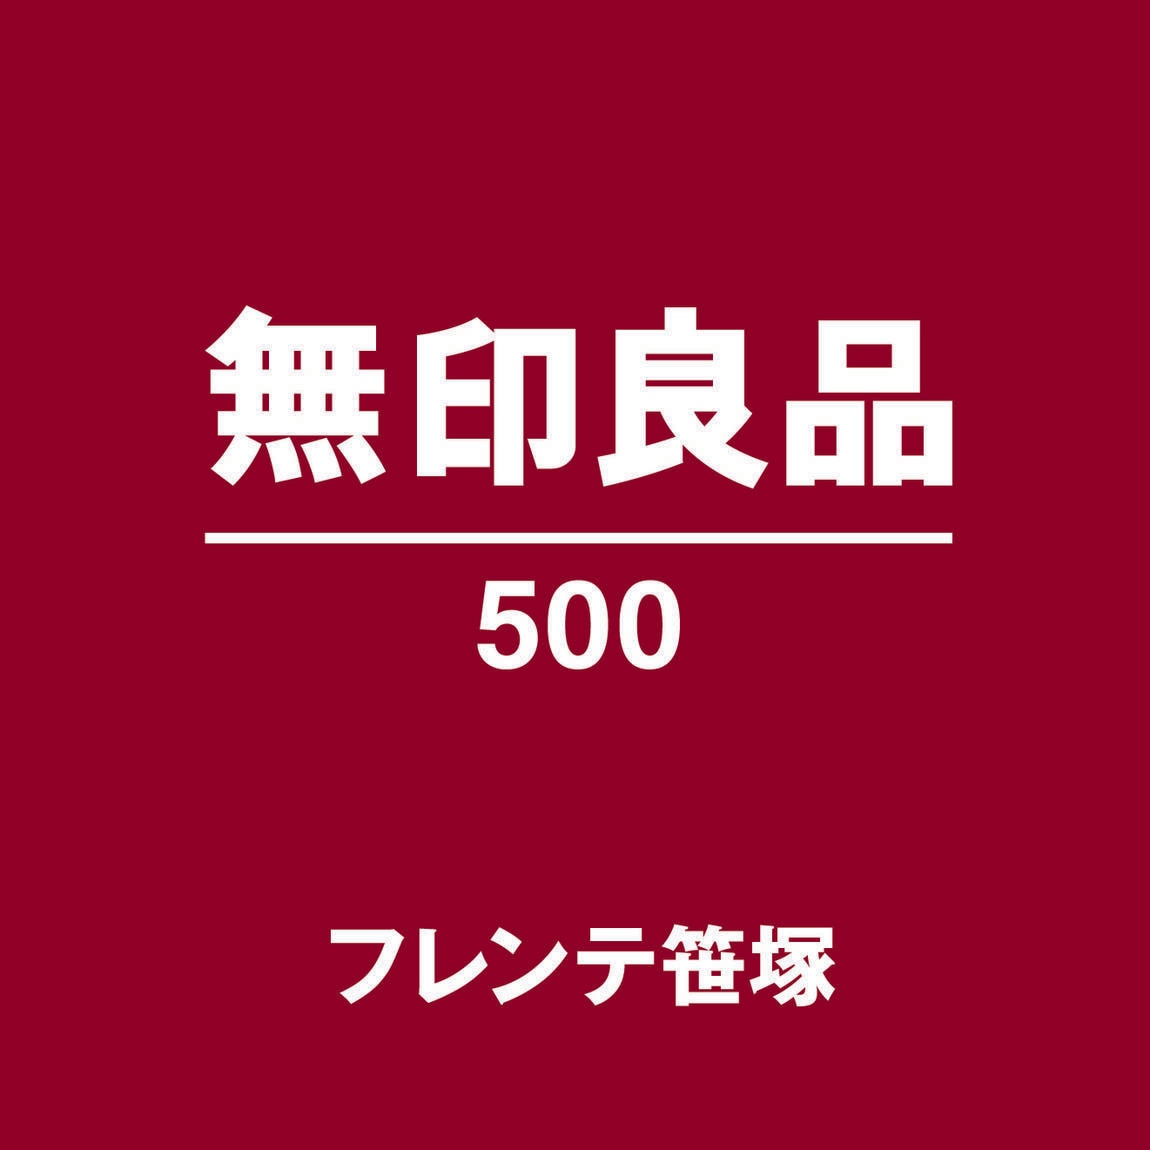 無印良品500フレンテ笹塚